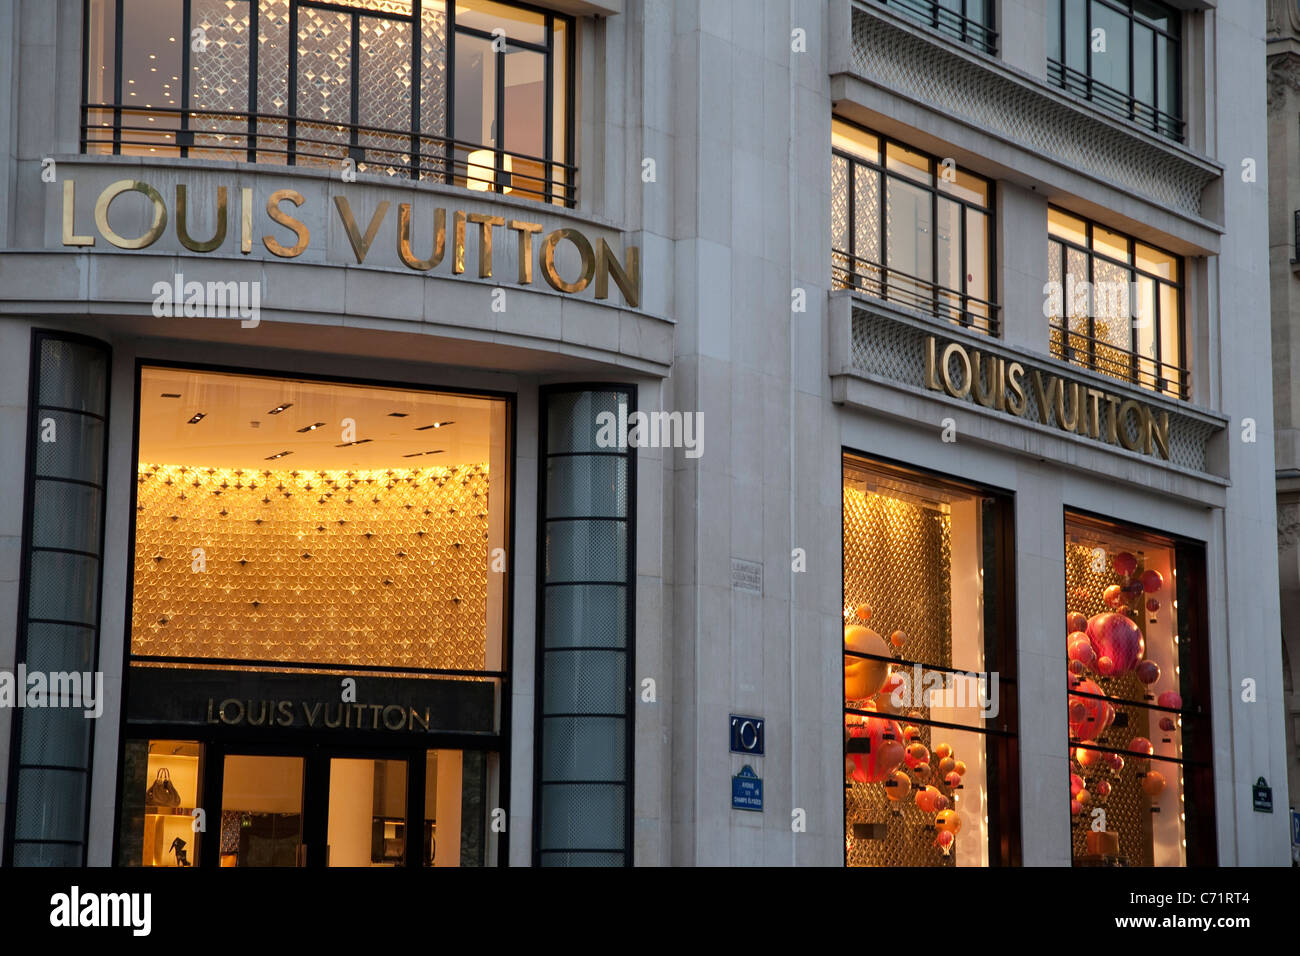 Loius Vuitton Shop on Champs-Elysees, Paris, France Stock Photo - Alamy